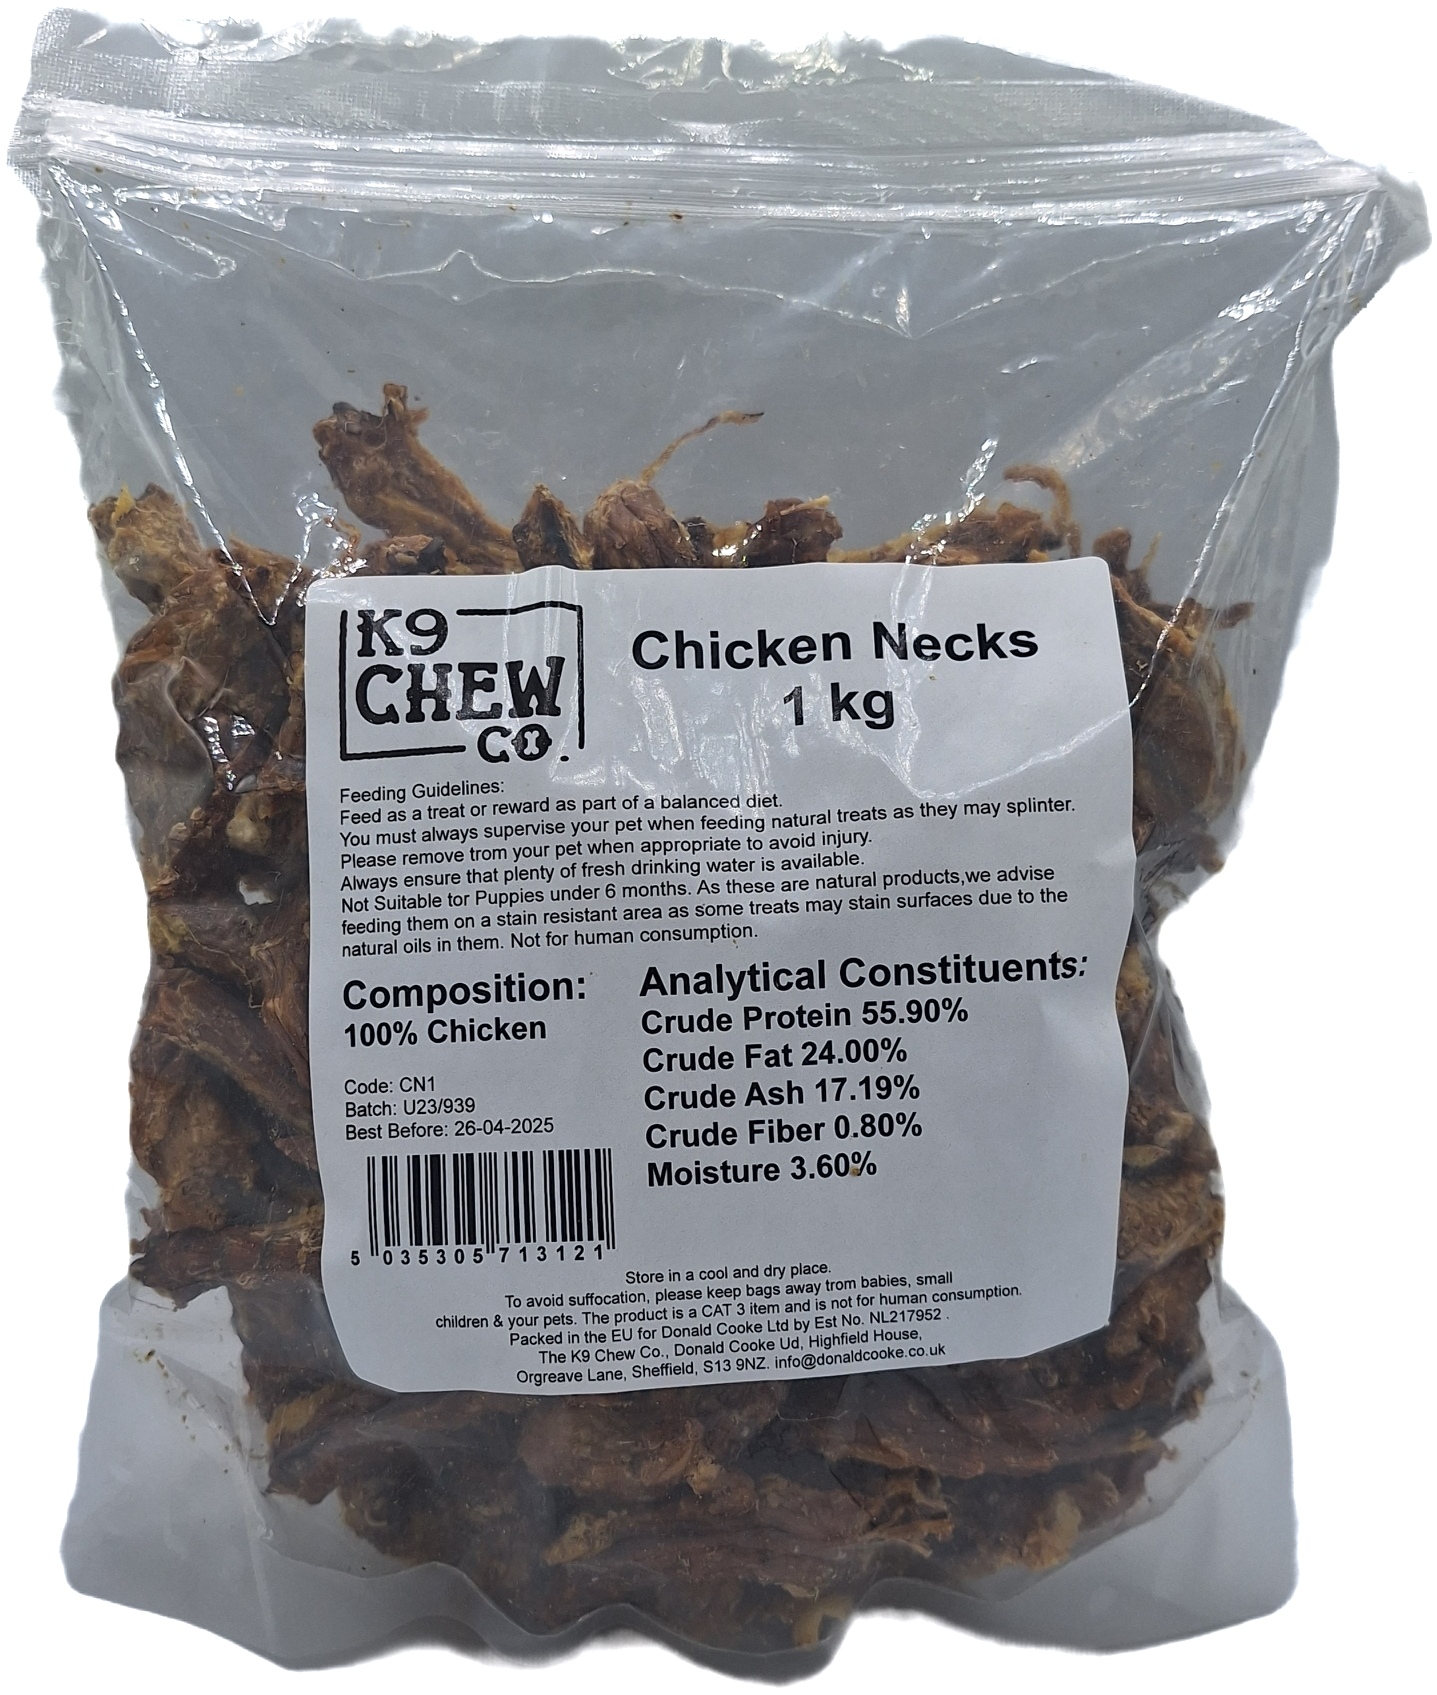 K9 Chew Co. Chicken Necks 1kg